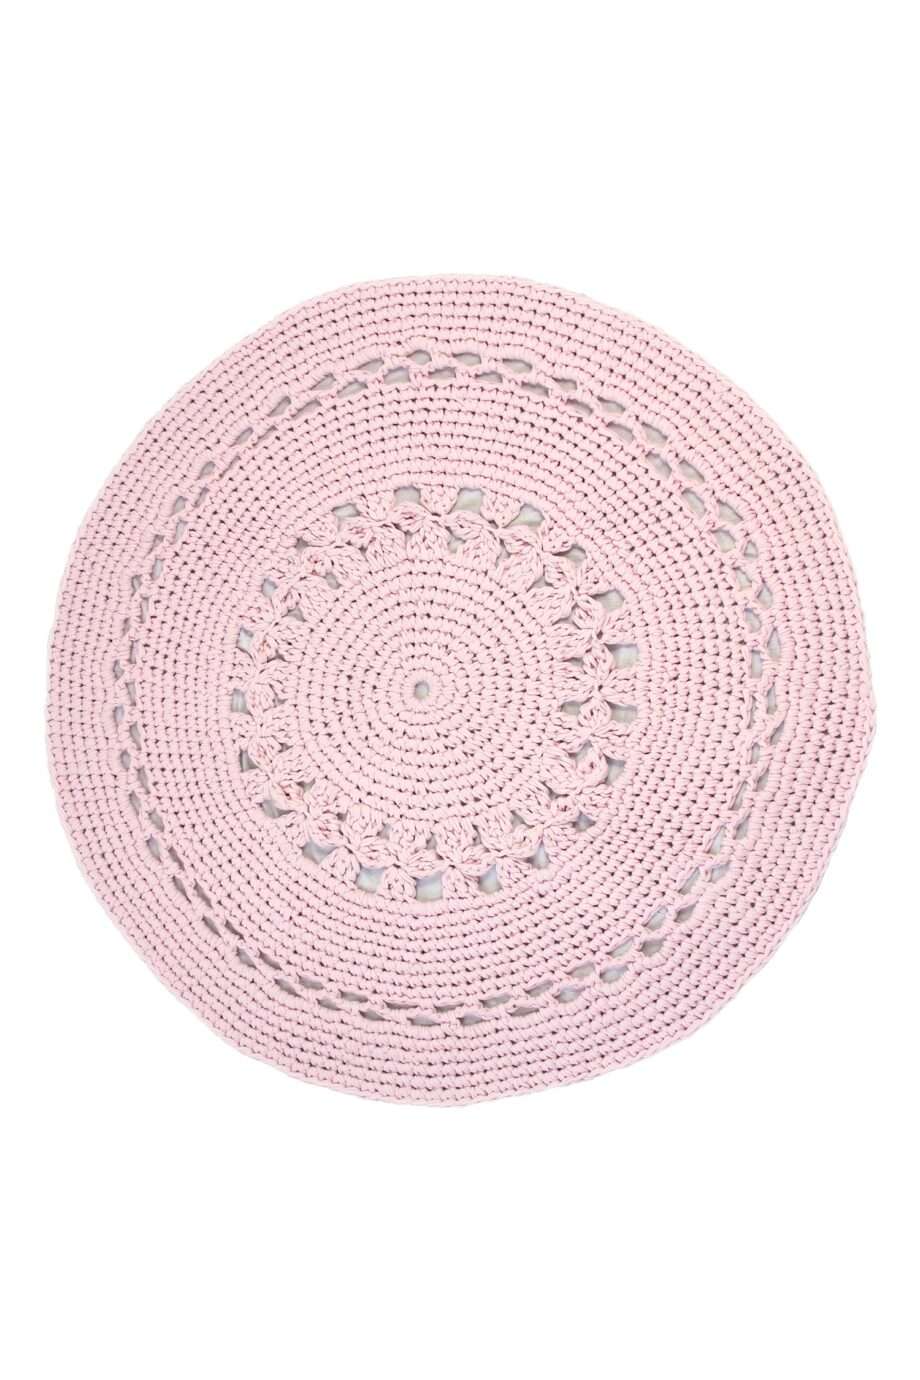 flor pink crochet cotton rug large